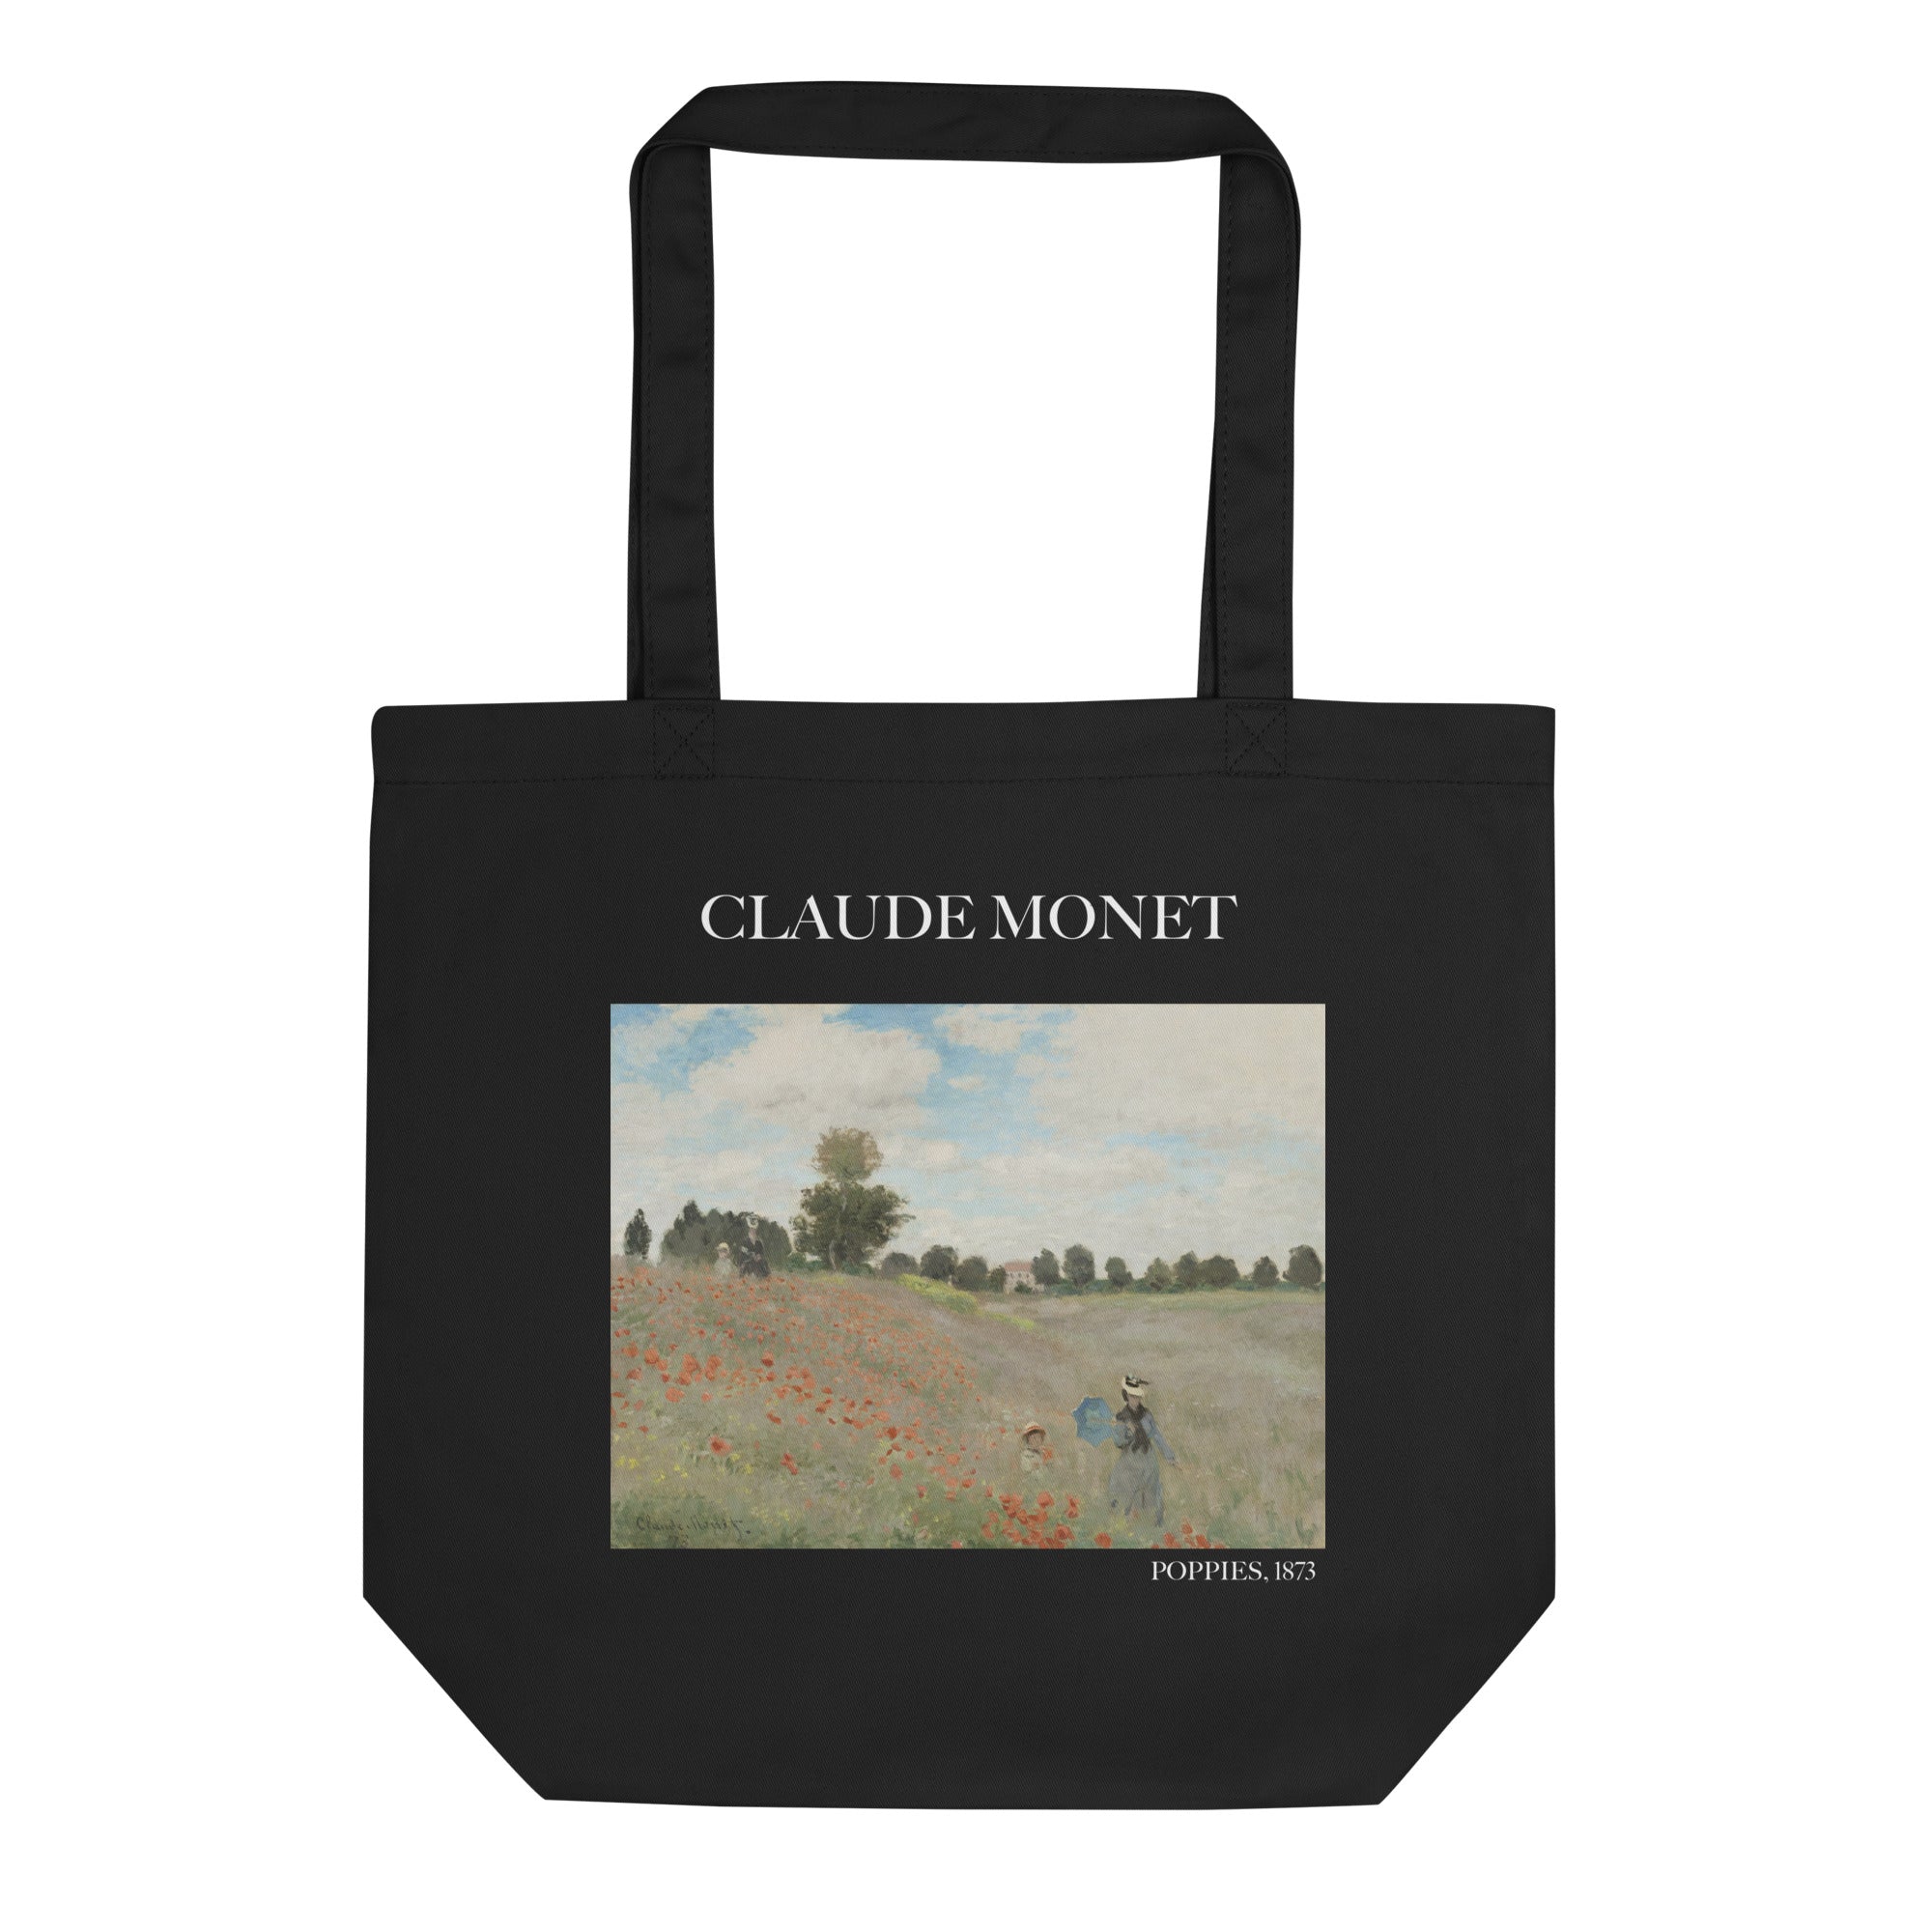 Claude Monet 'Mohnblumen' berühmtes Gemälde Einkaufstasche | Umweltfreundliche Kunst Einkaufstasche